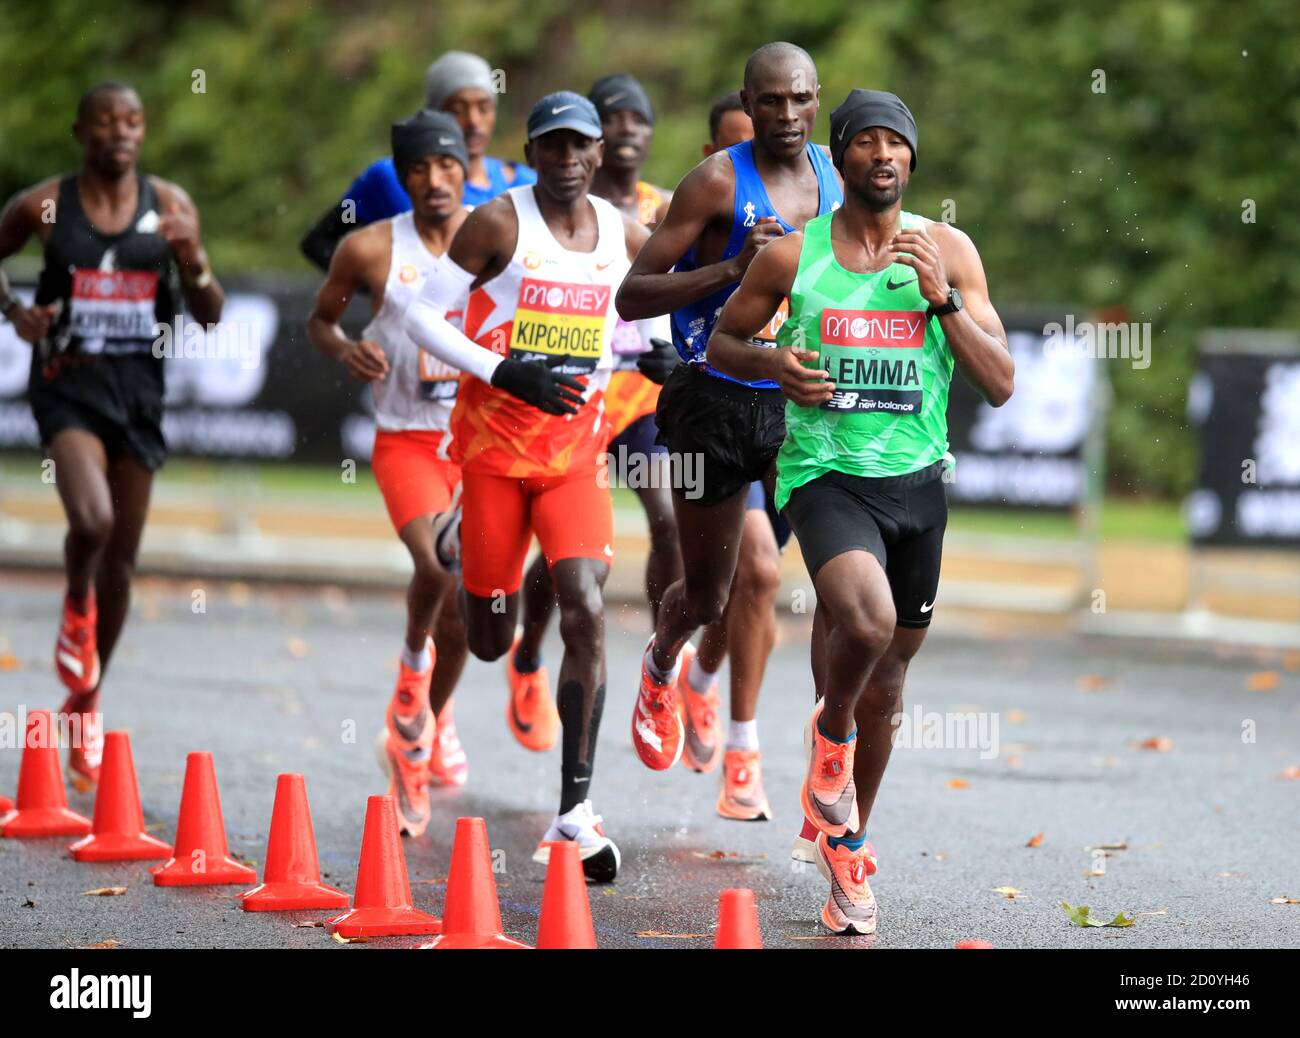 Sisay Lemma en Éthiopie (à droite) en action pendant la course d'élite des hommes pendant le marathon de Londres Virgin Money autour du parc St James'. Banque D'Images